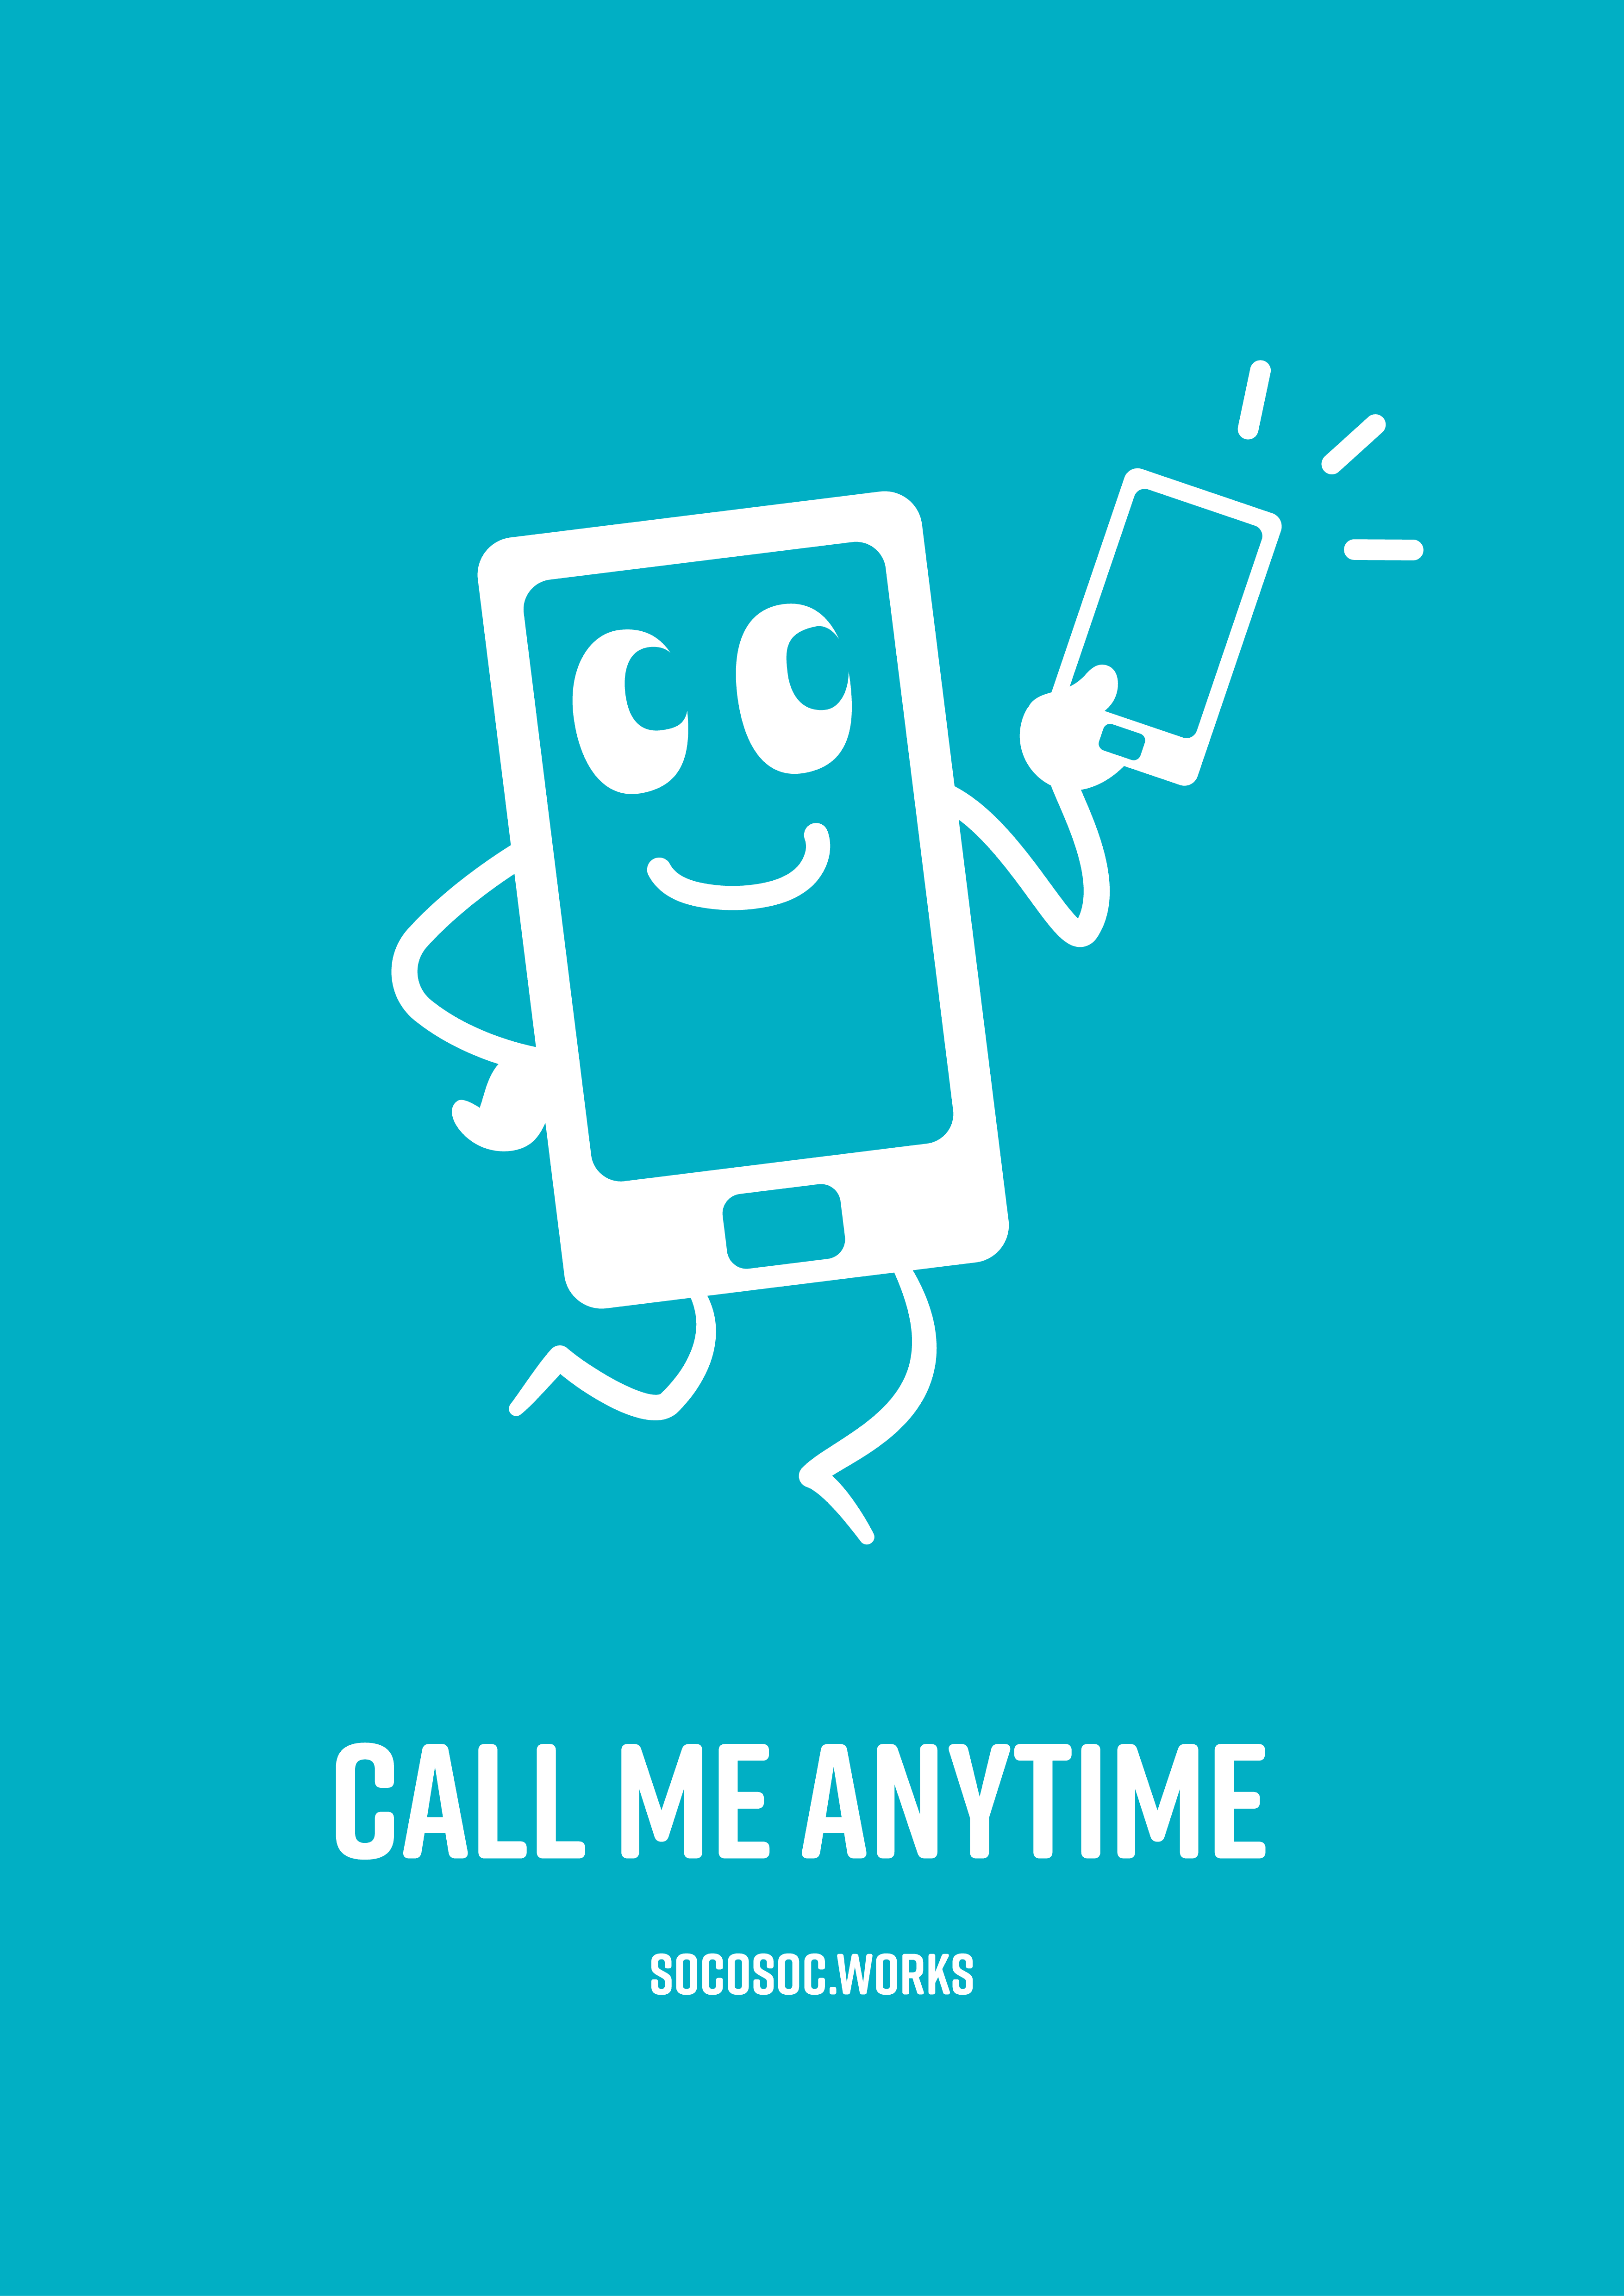 Call me anytime